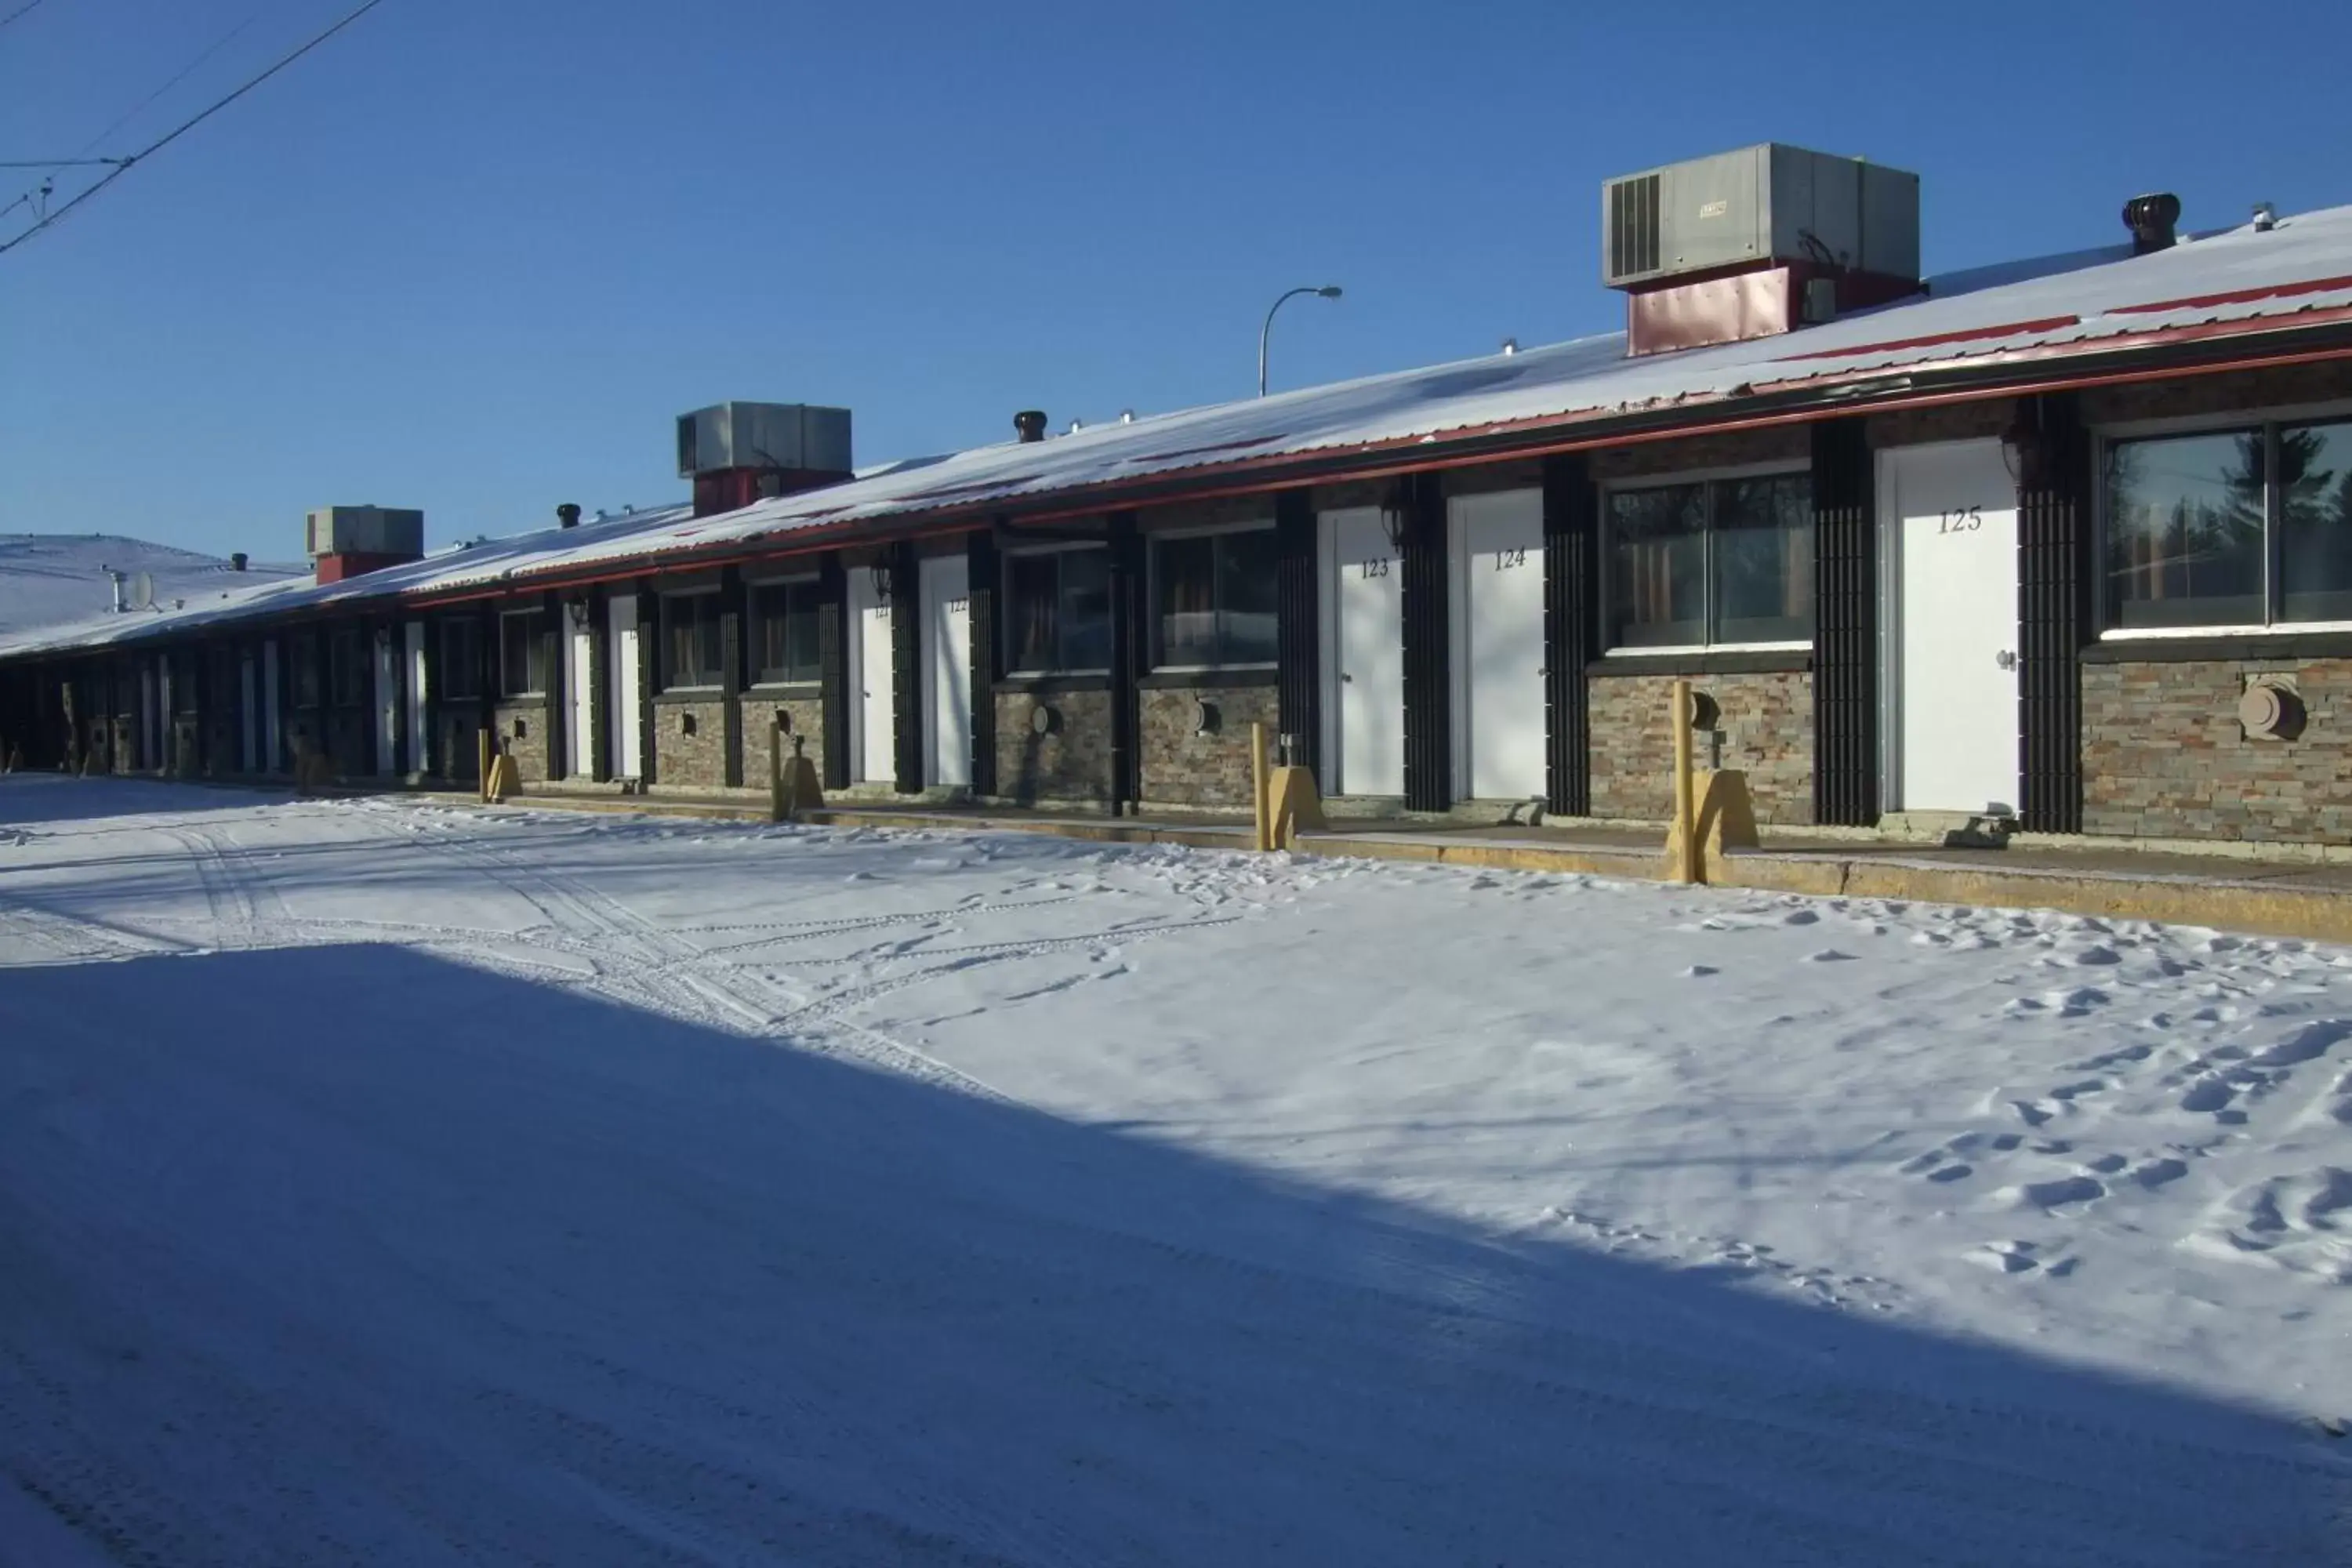 Property building, Winter in Trailside Inn